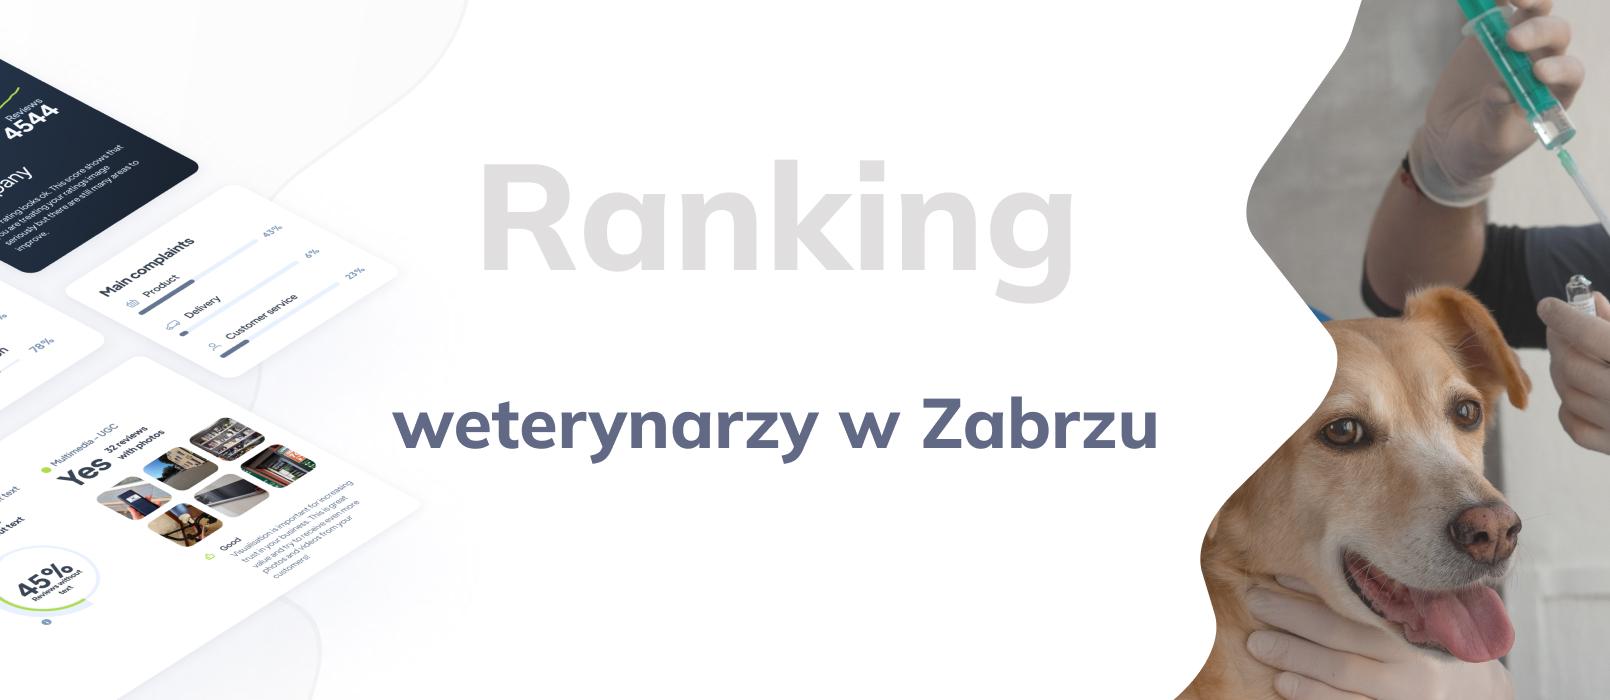 Weterynarz w Zabrzu - ranking TOP 10